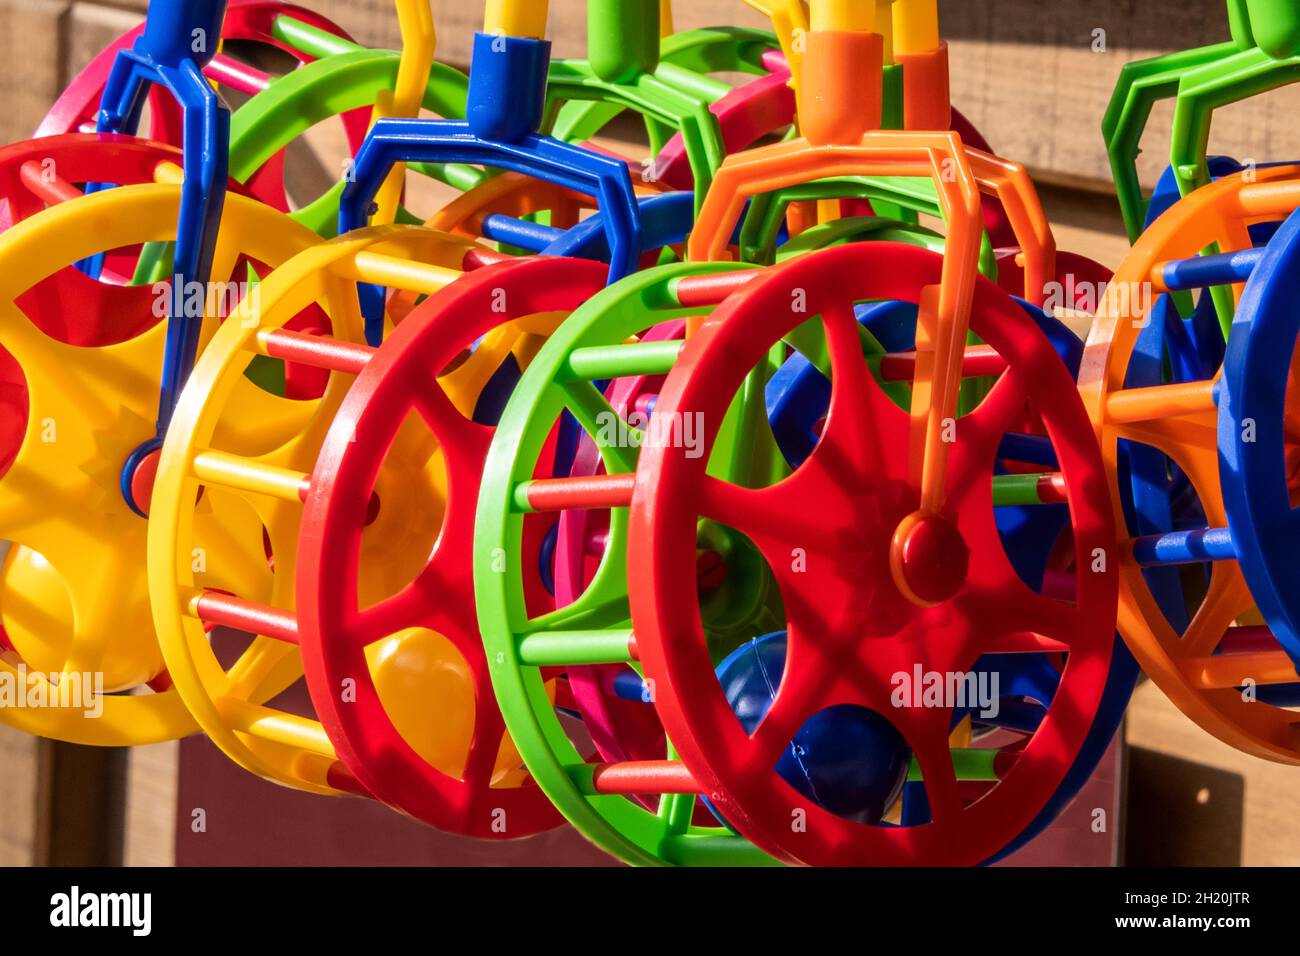 Près de la vue des jouets pour les jeunes enfants dans diverses couleurs Banque D'Images